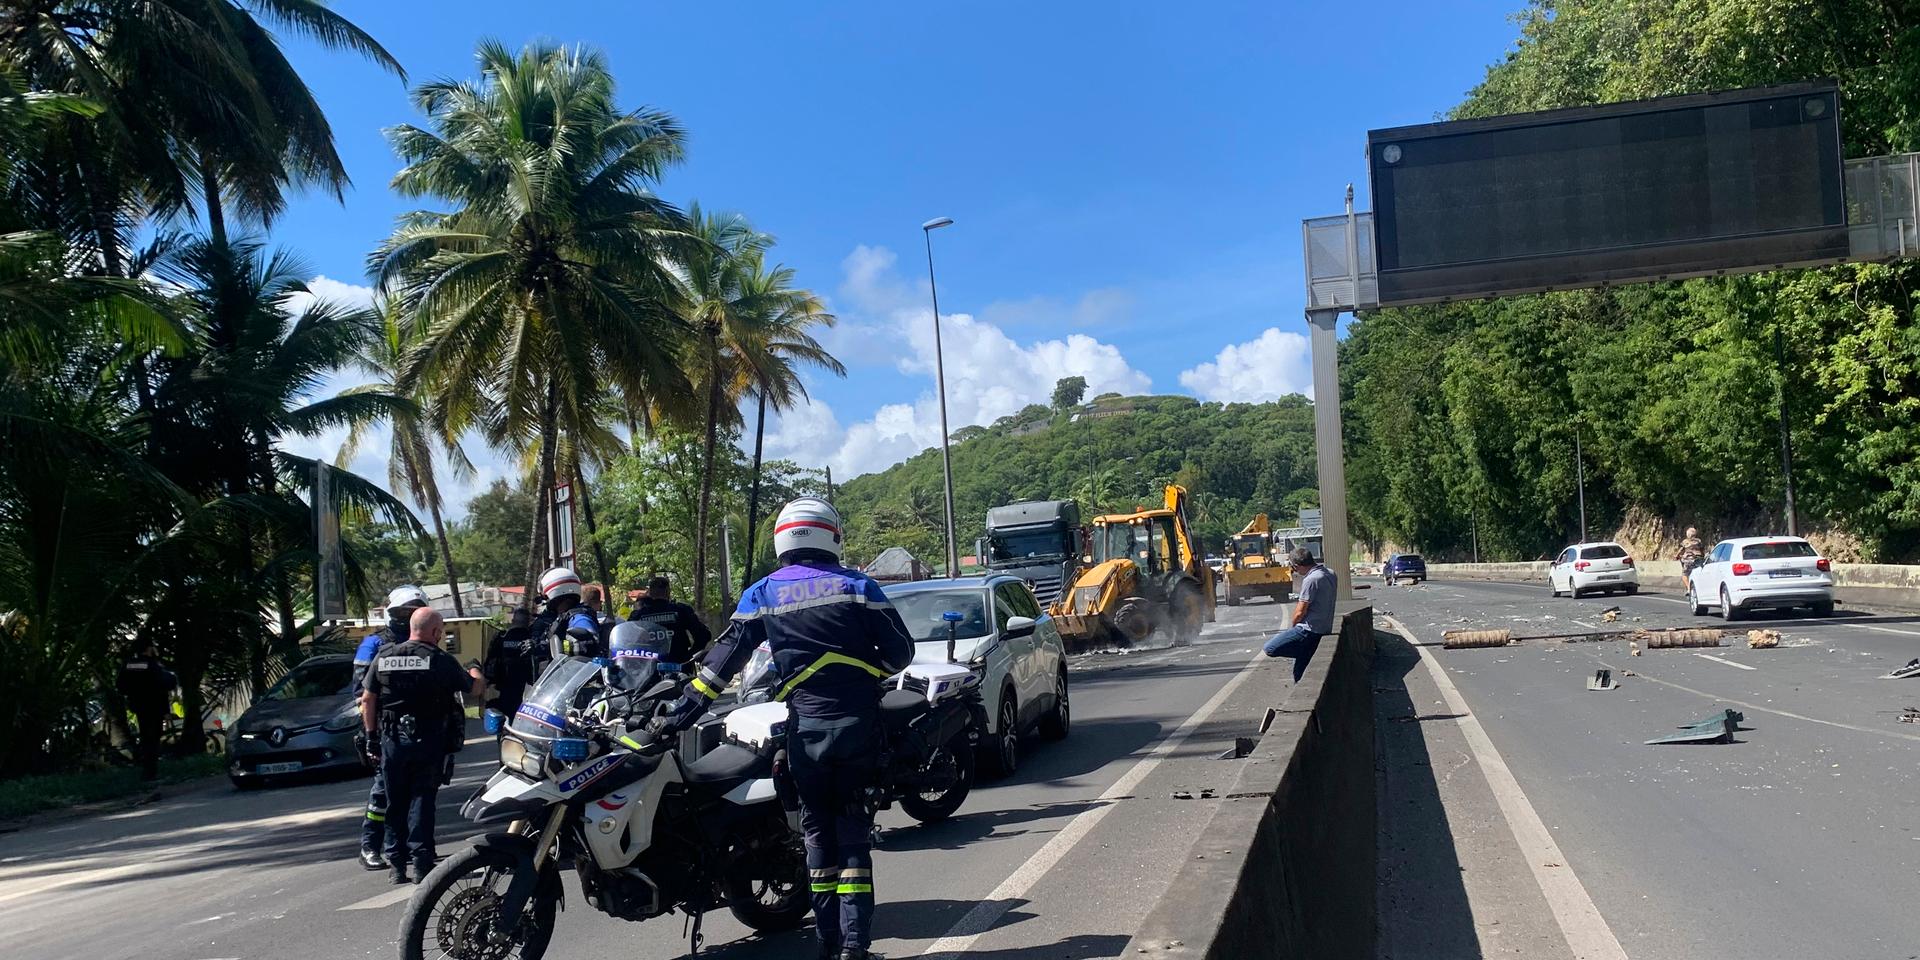 Polis leder om trafik efter en covidprotest i det franska territoriet Guadeloupe.